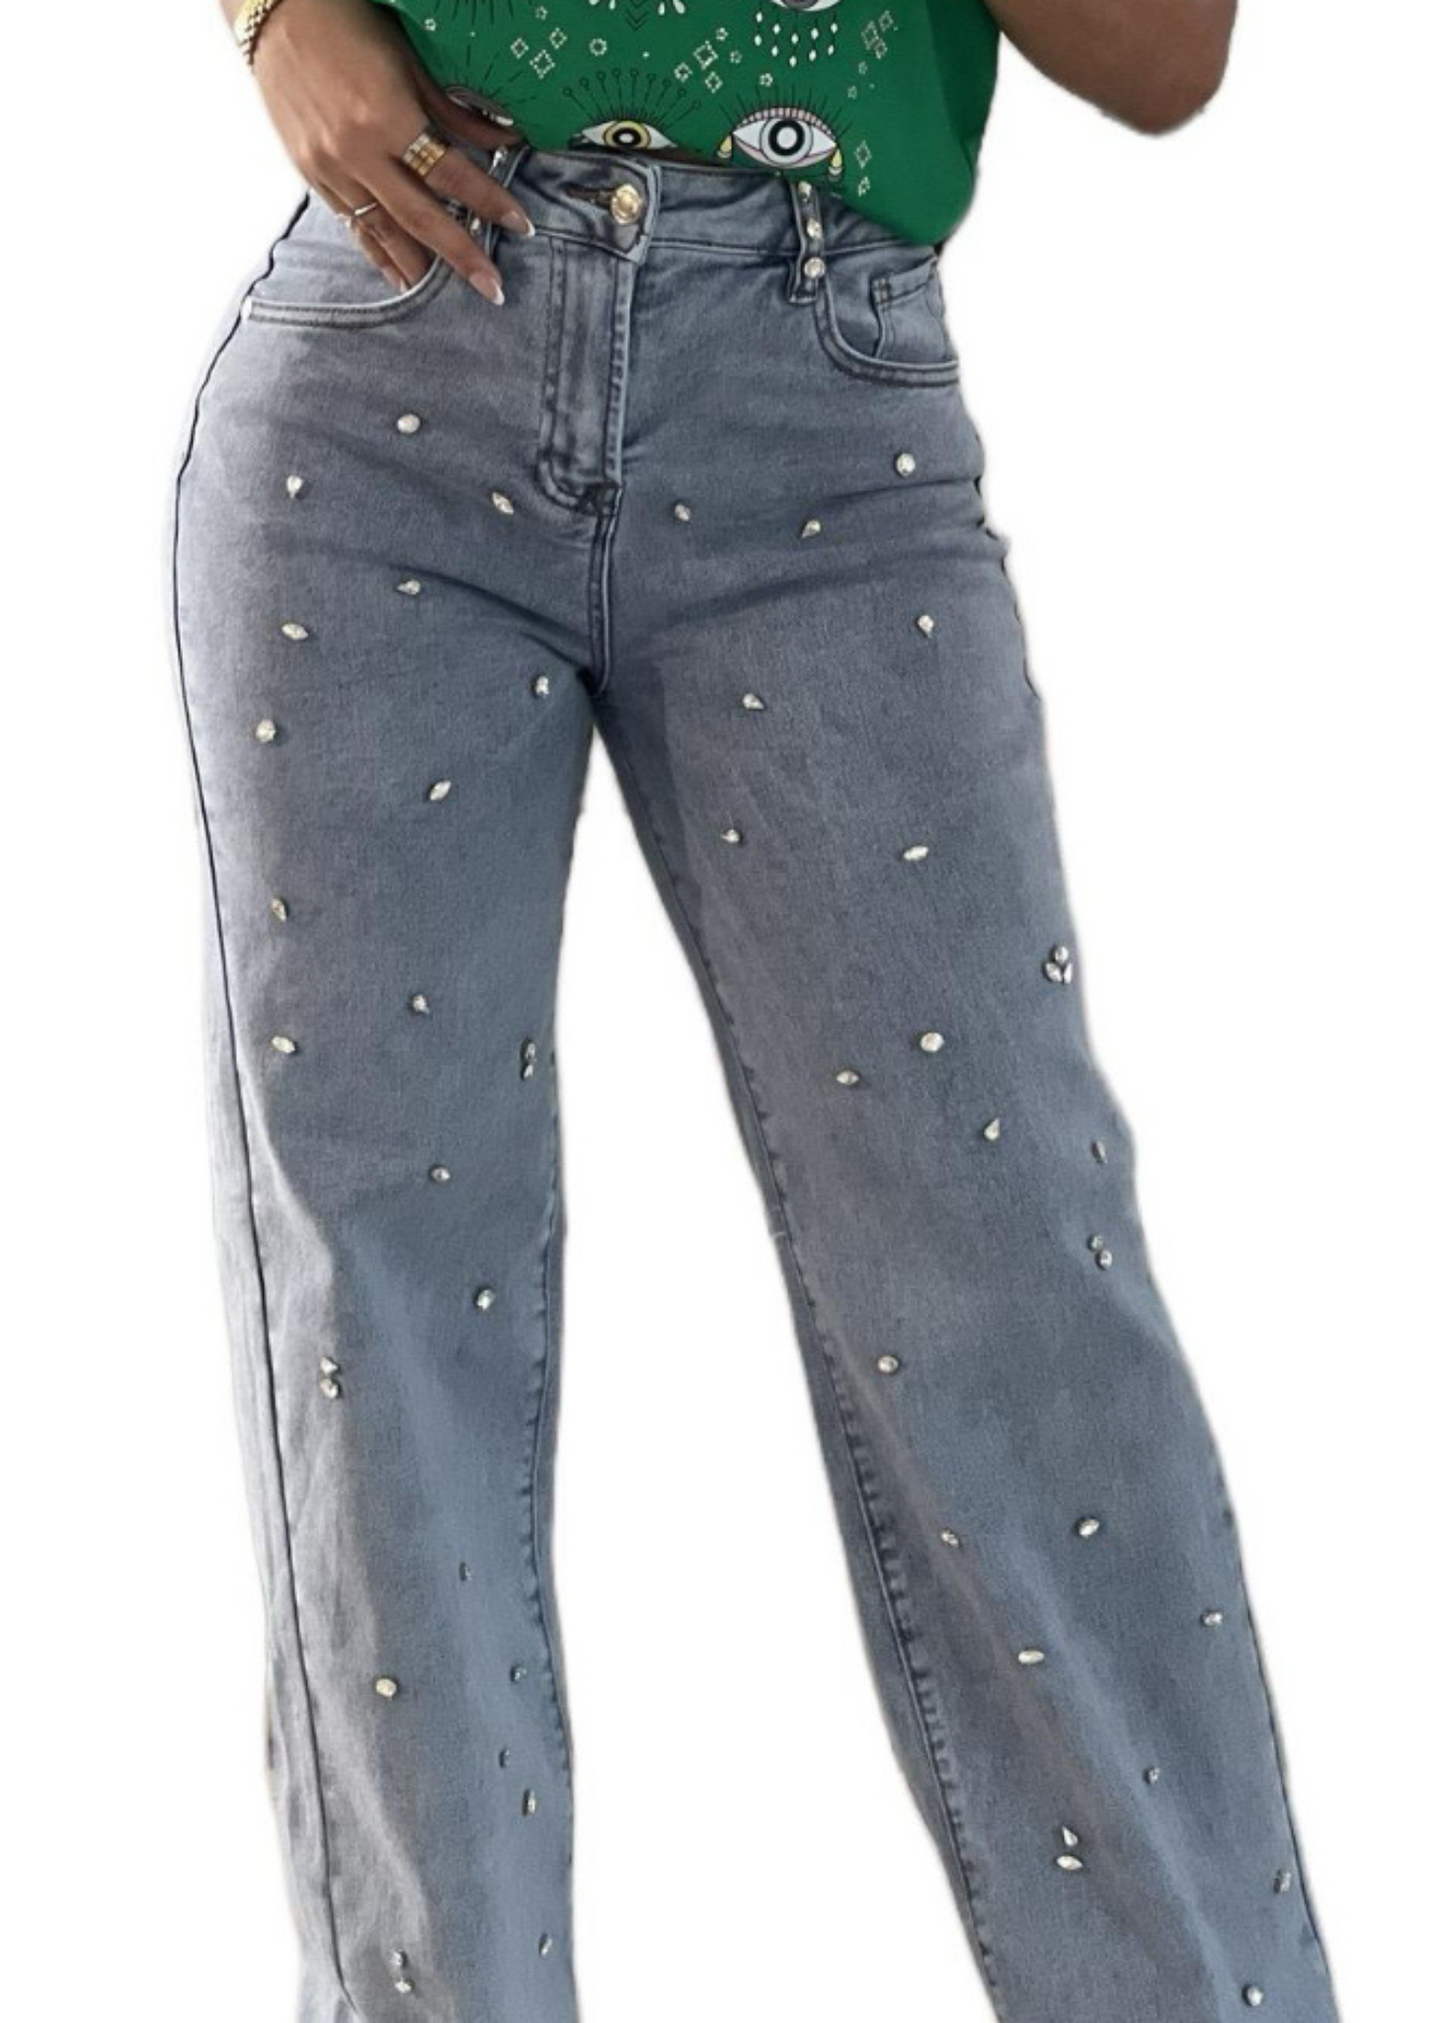 Rhinestone Fashion Denim Stretchy Jeans